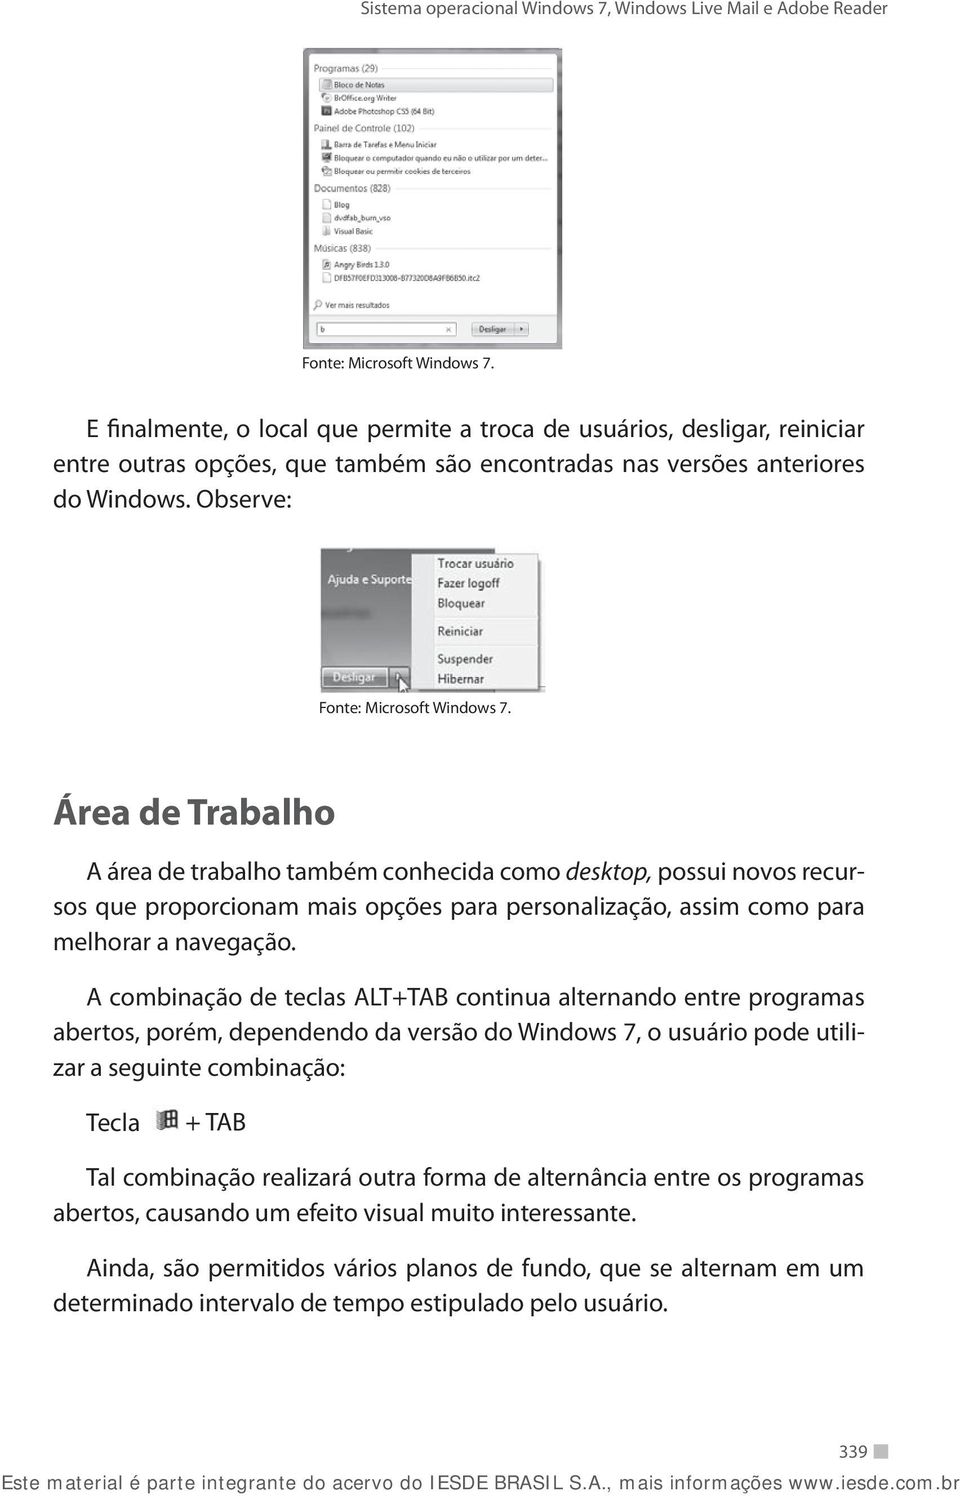 A combinação de teclas ALT+TAB continua alternando entre programas abertos, porém, dependendo da versão do Windows 7, o usuário pode utilizar a seguinte combinação: Tecla + TAB Tal combinação